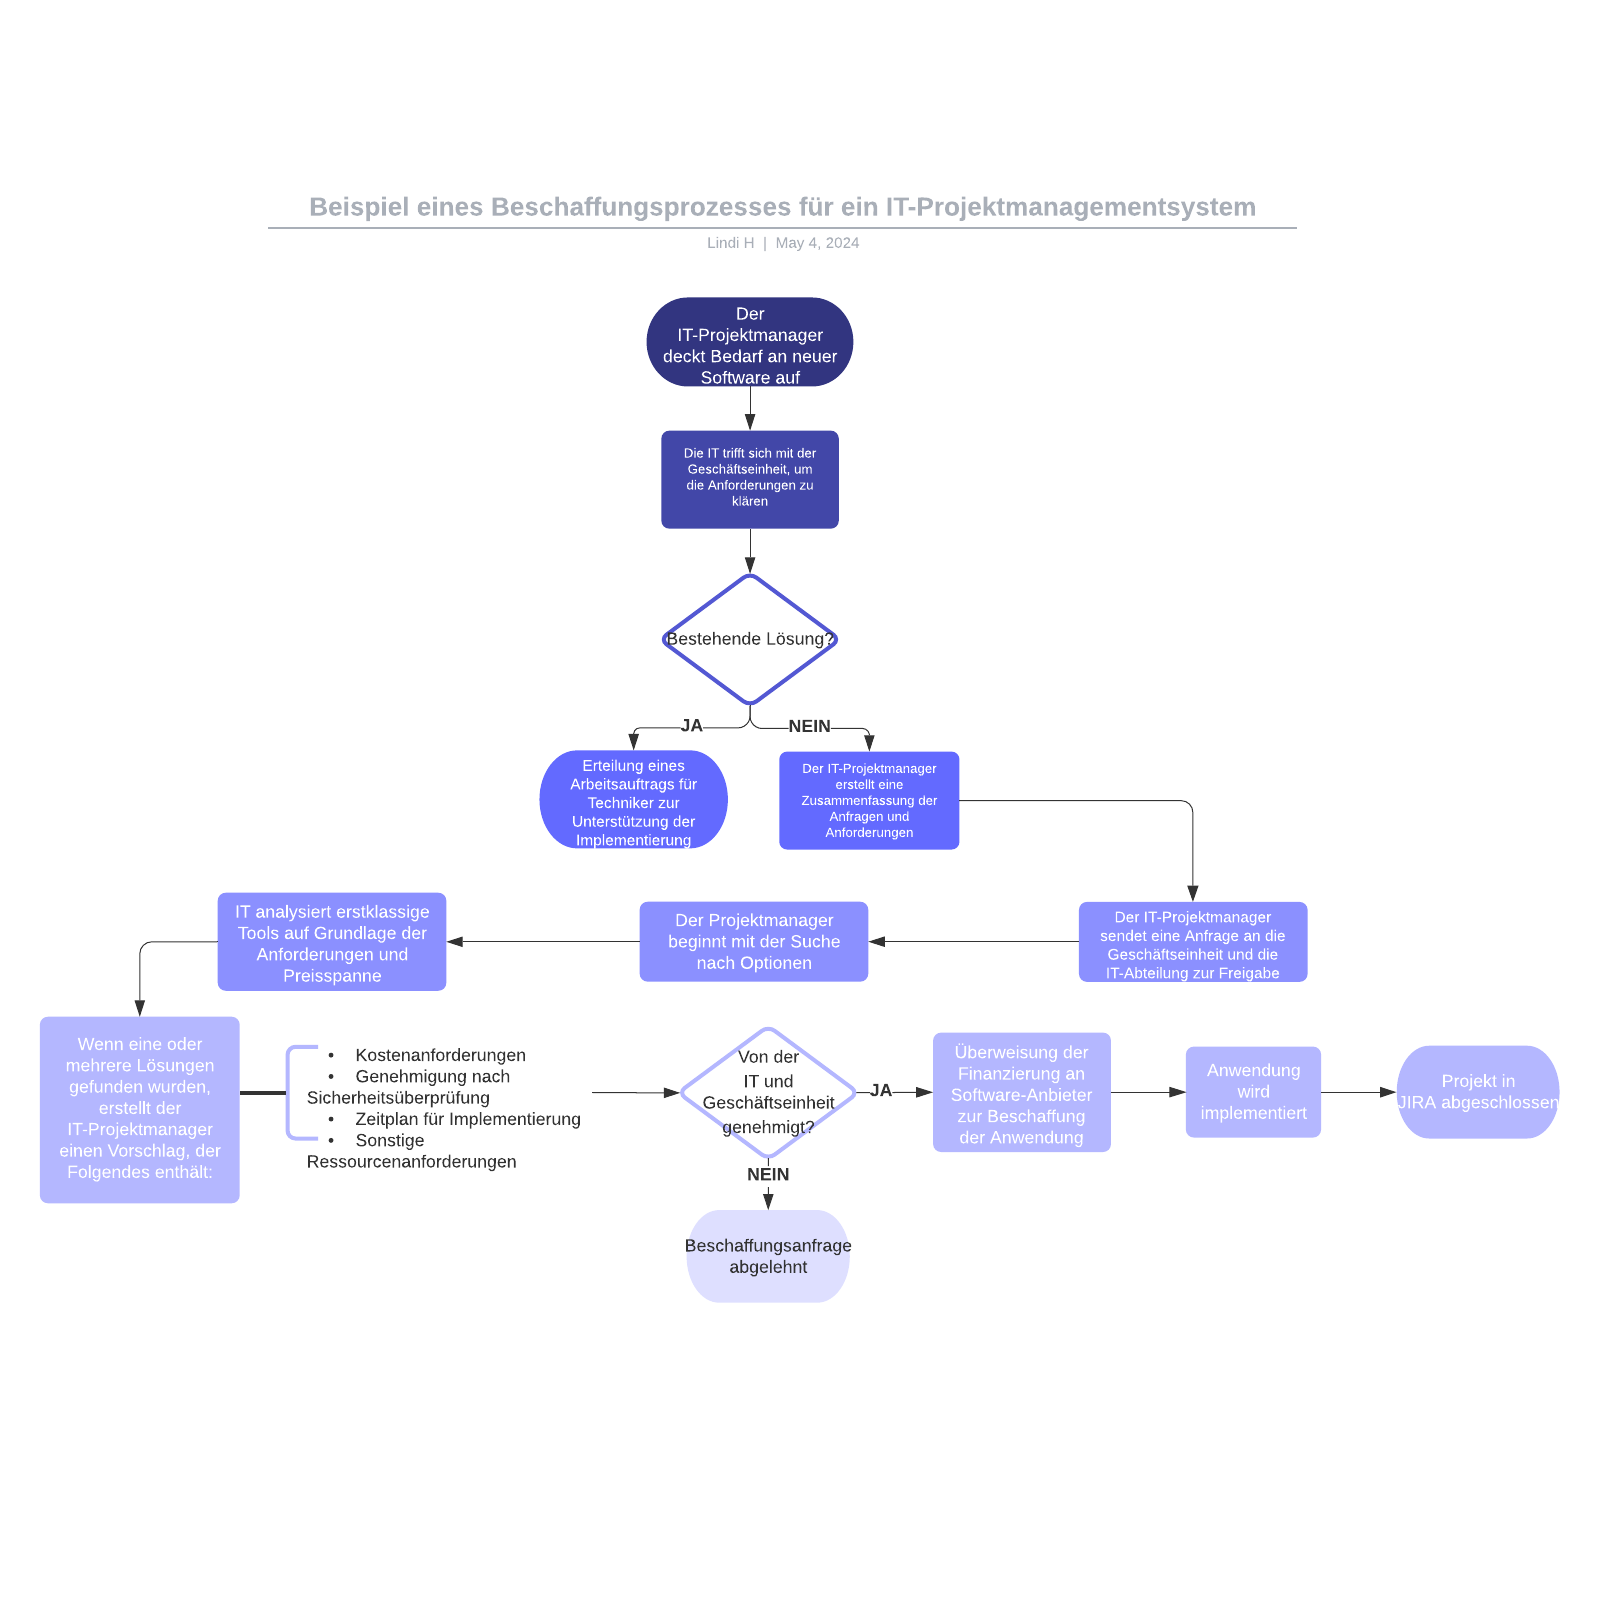 Beschaffungsprozesses für ein IT-Projektmanagementsystem - Beispiel